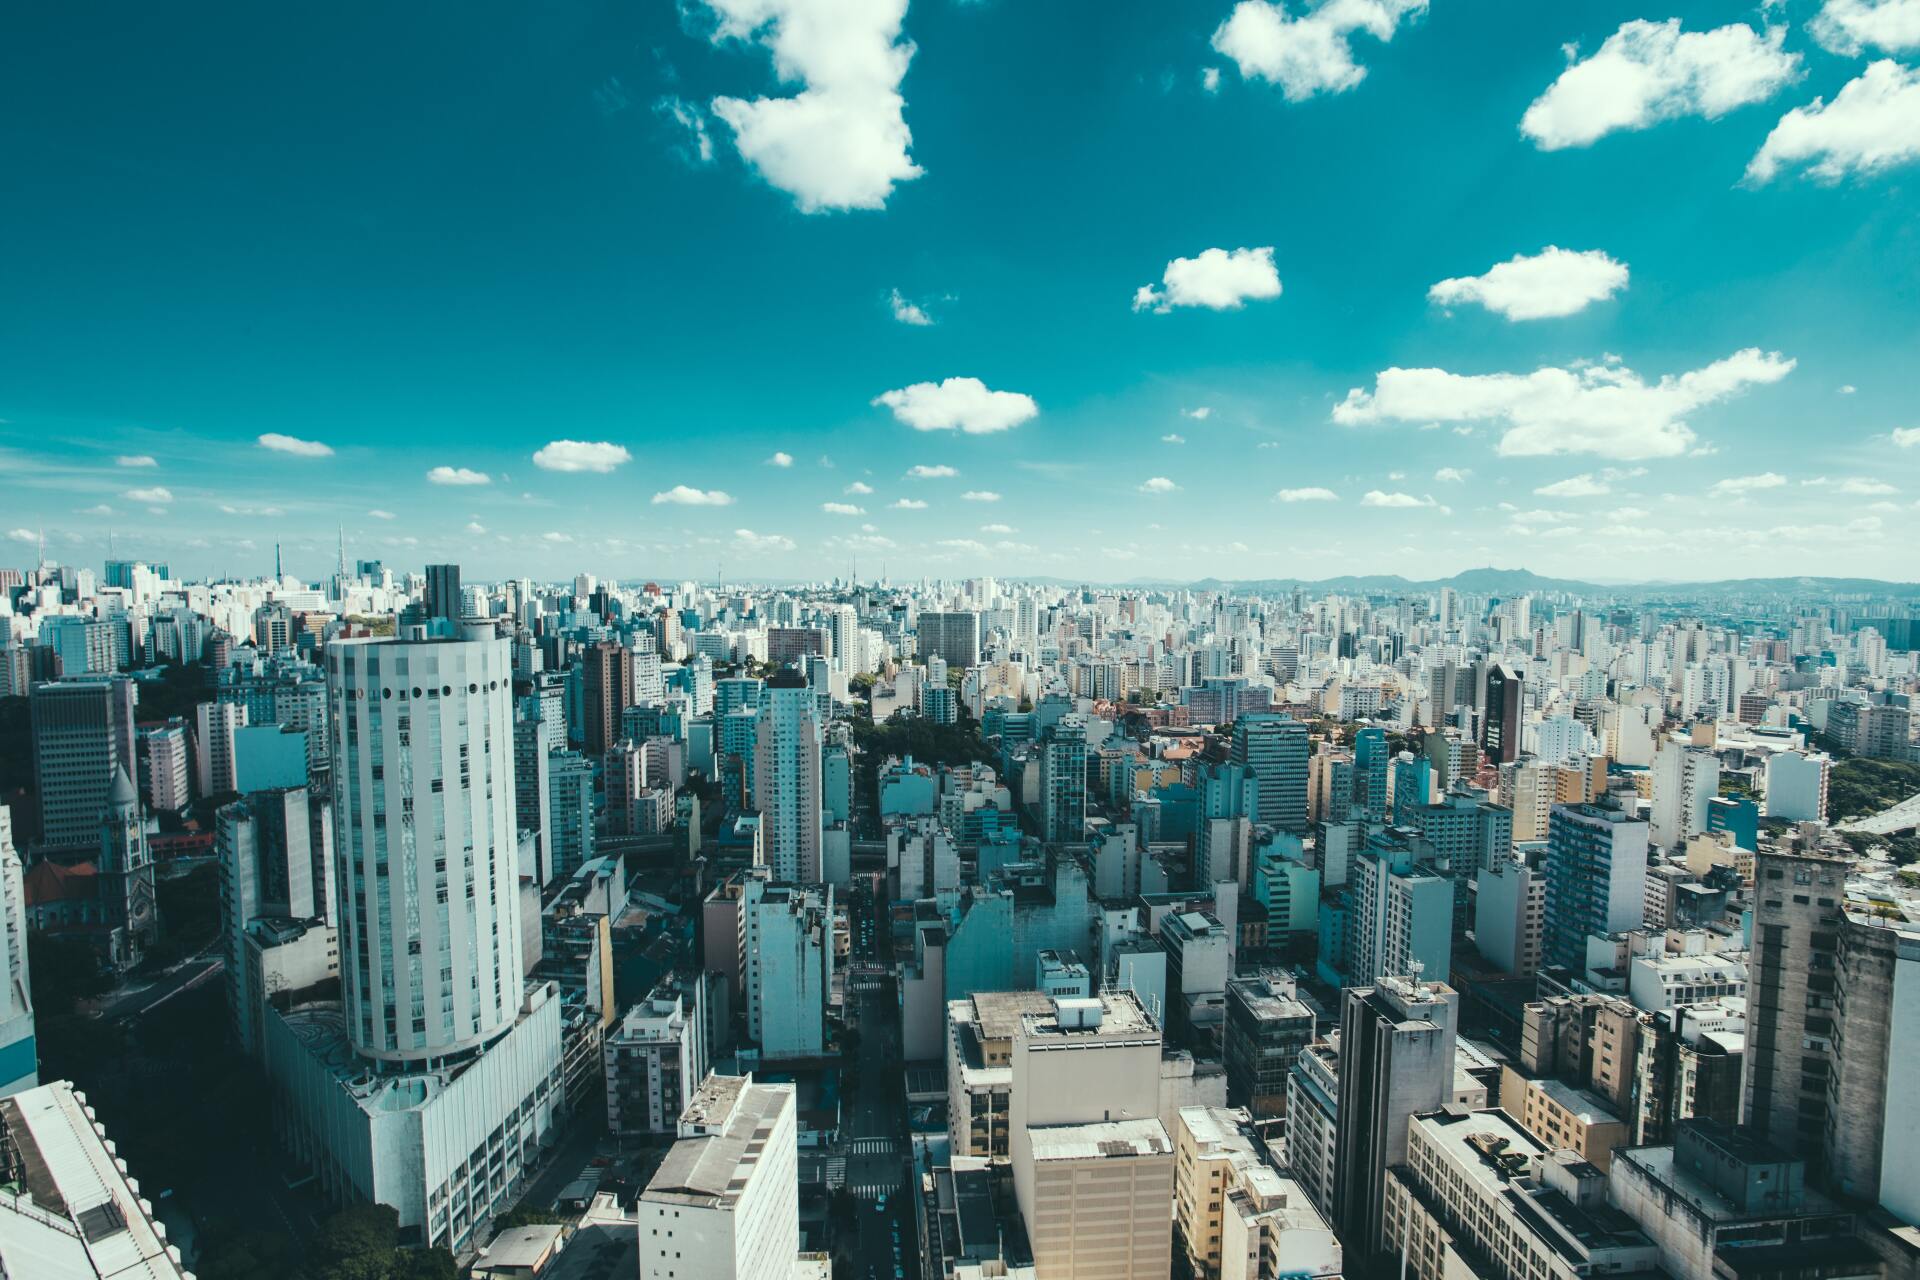 Vista da arranha-céus na cidade de São Paulo